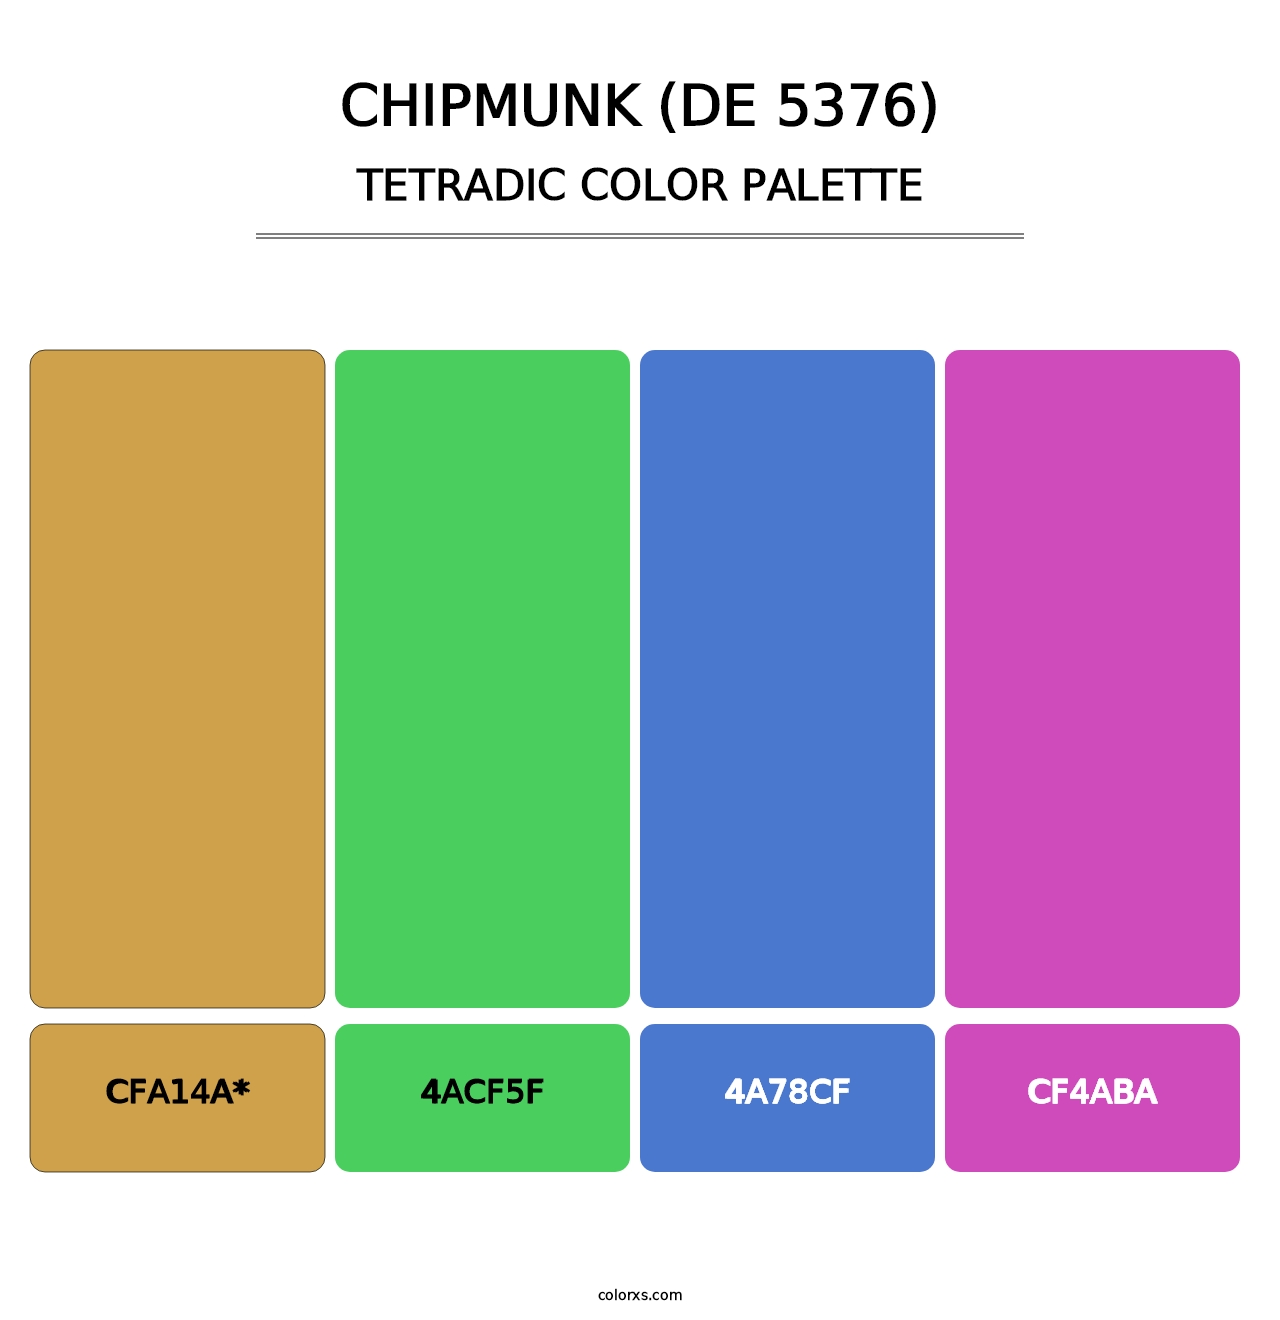 Chipmunk (DE 5376) - Tetradic Color Palette